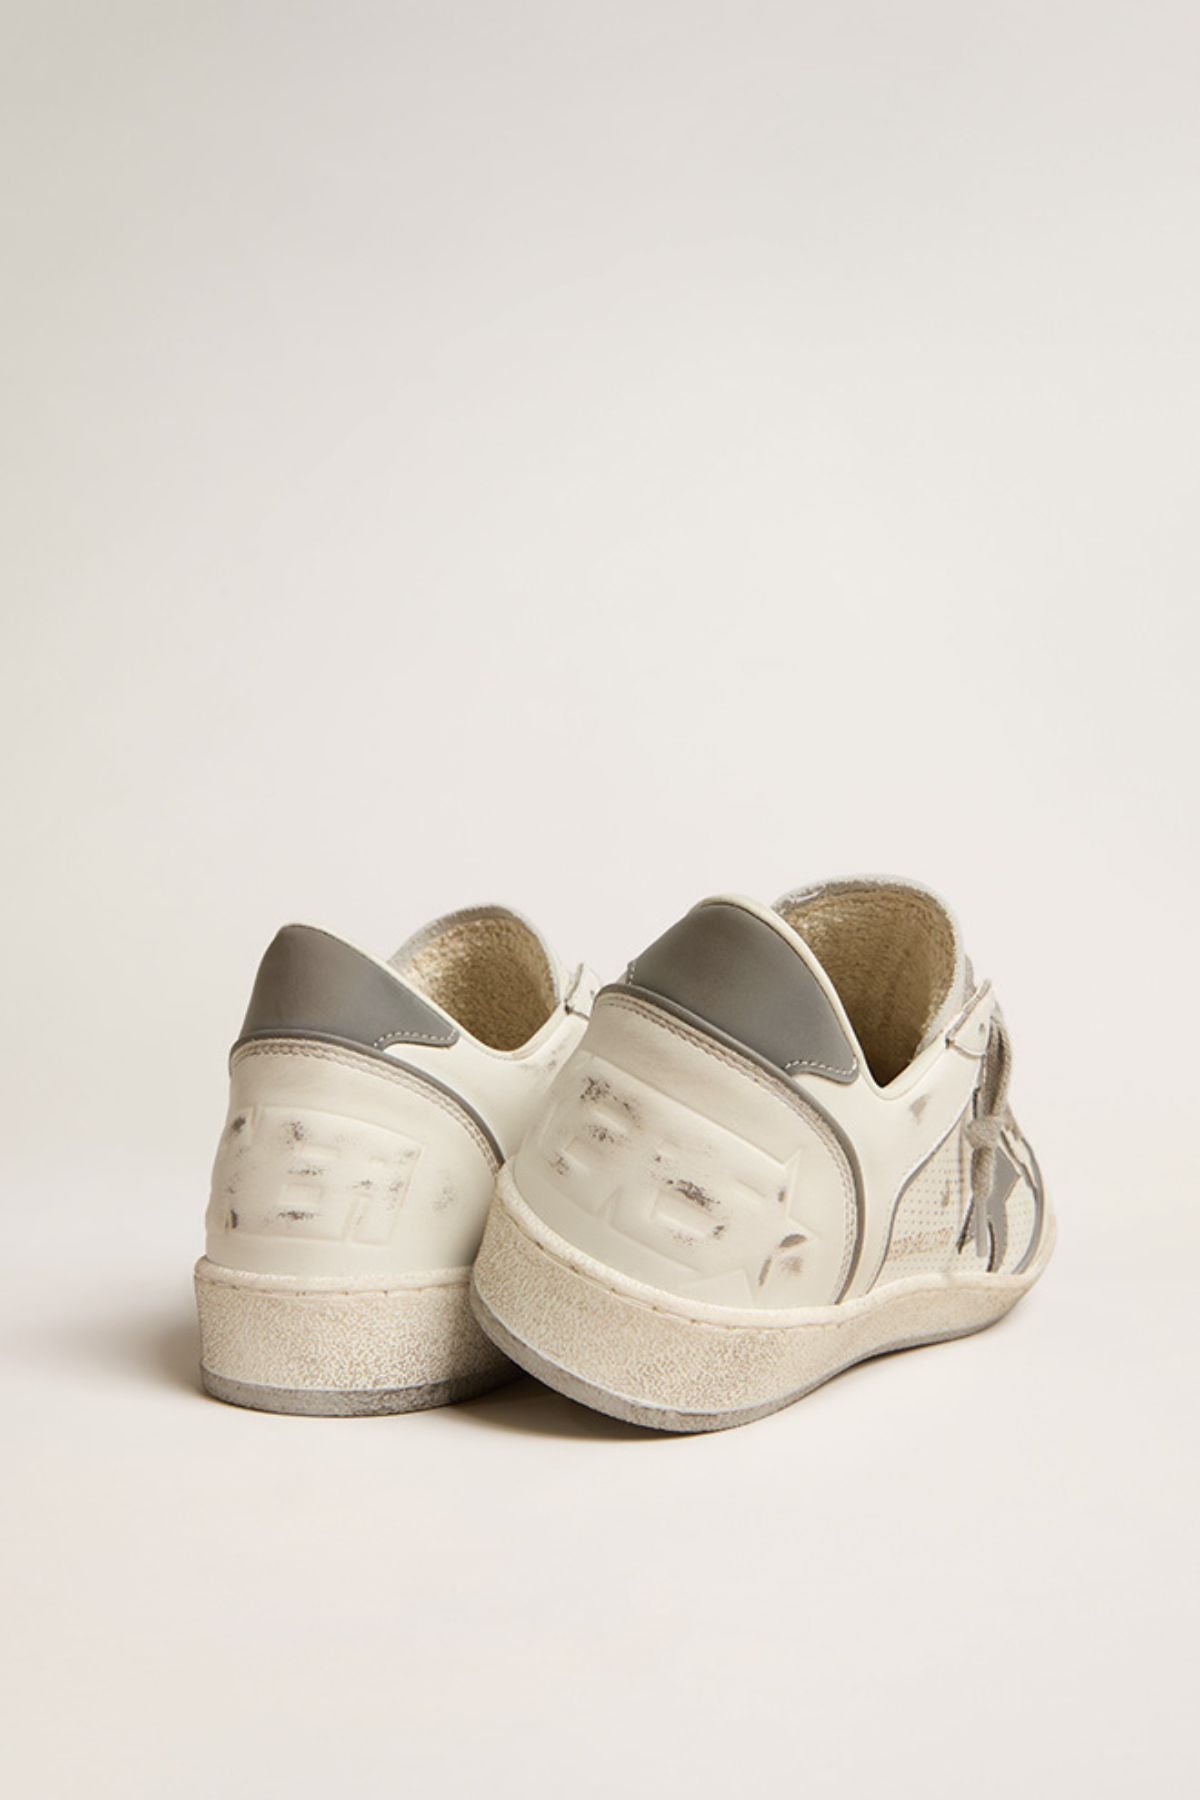 Golden Goose Ball Star Sneaker - White/ Silver